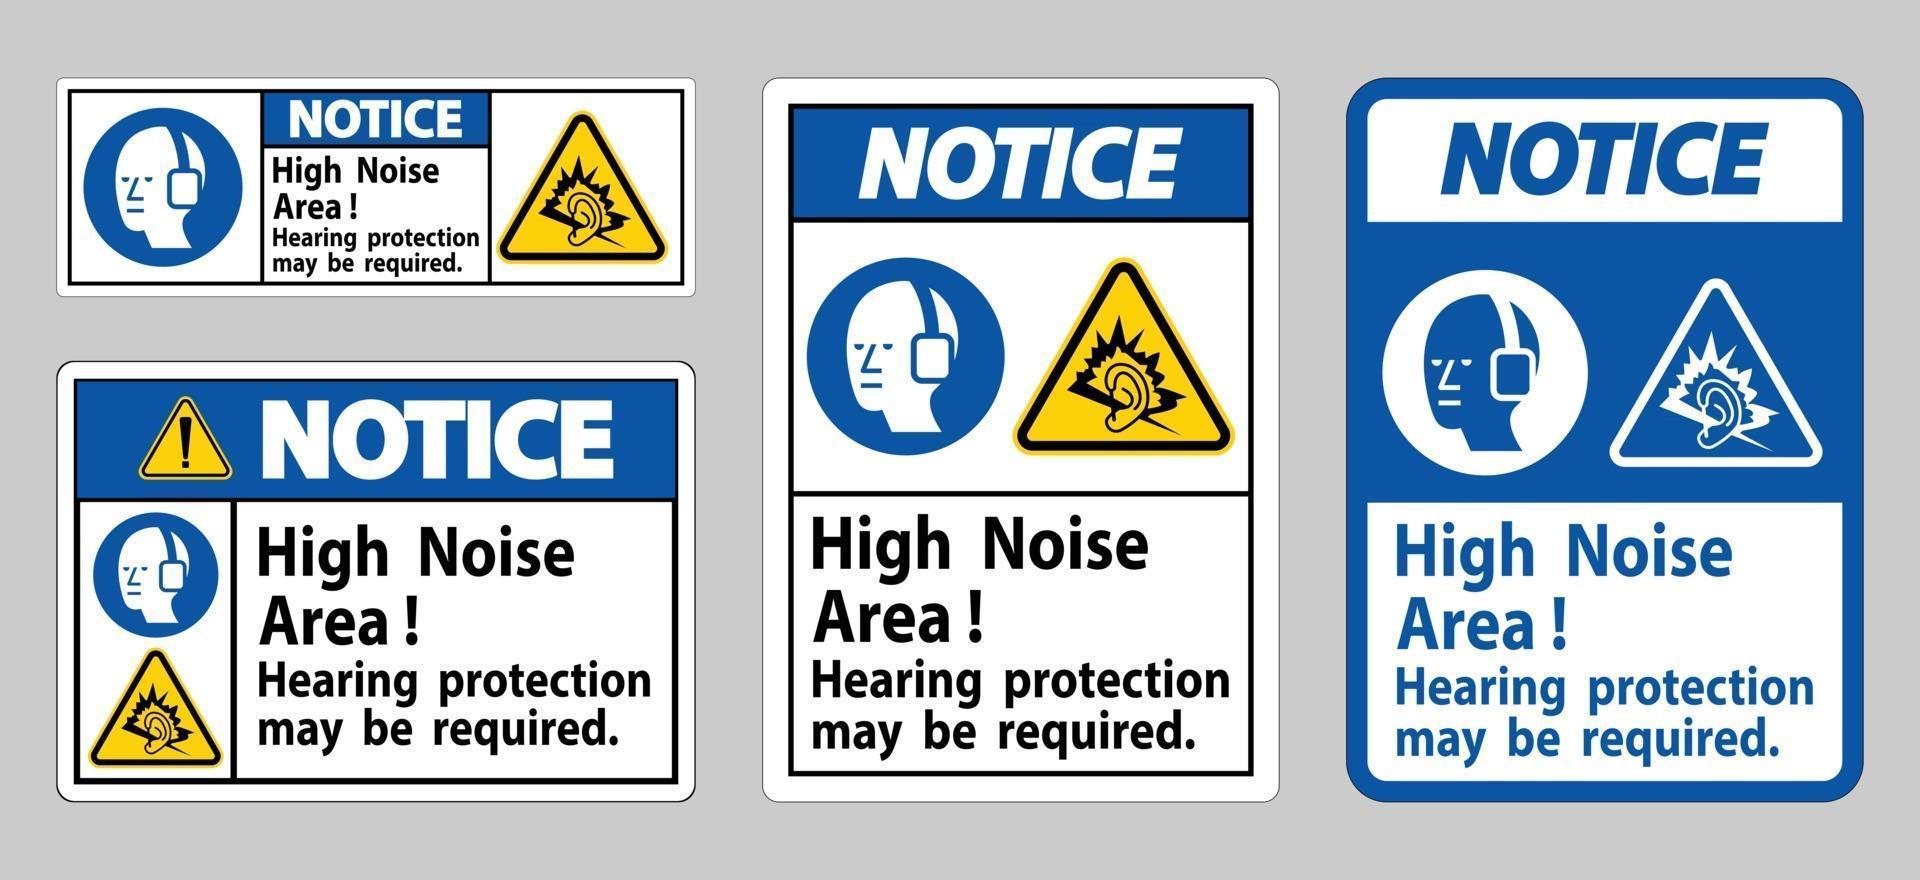 Hinweisschild Gehörschutz in Bereichen mit hohem Lärmpegel kann erforderlich sein vektor